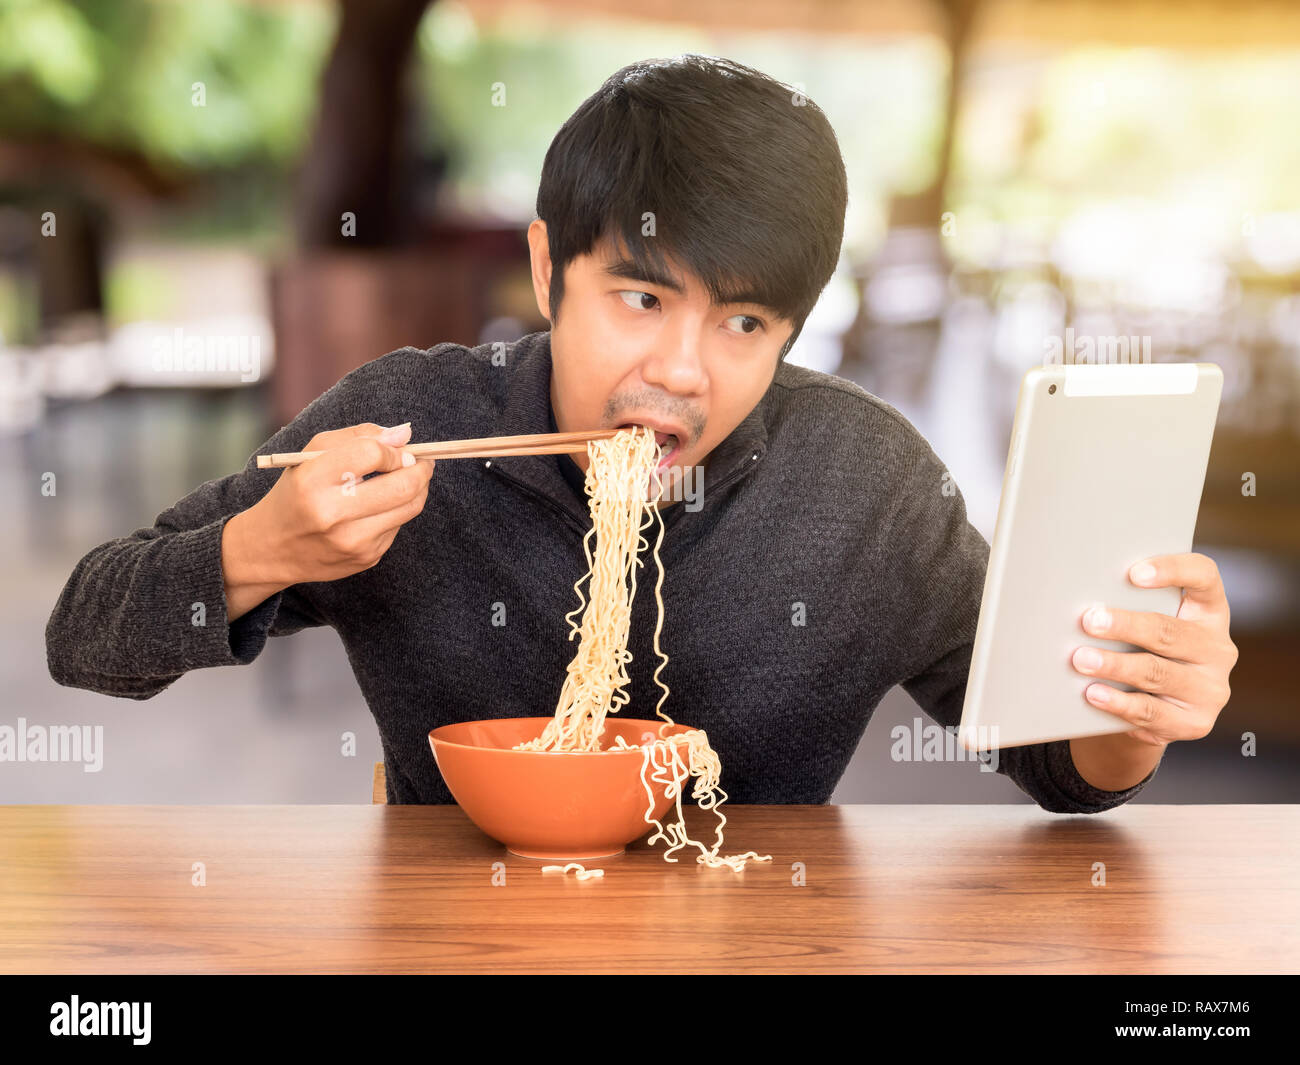 Mann essen chinesische Nudelsuppe monströs während der Suche und Verwendung von Tablet. Konzept der Smartphone sucht, phubbing oder soziales Netzwerk Probleme Stockfoto